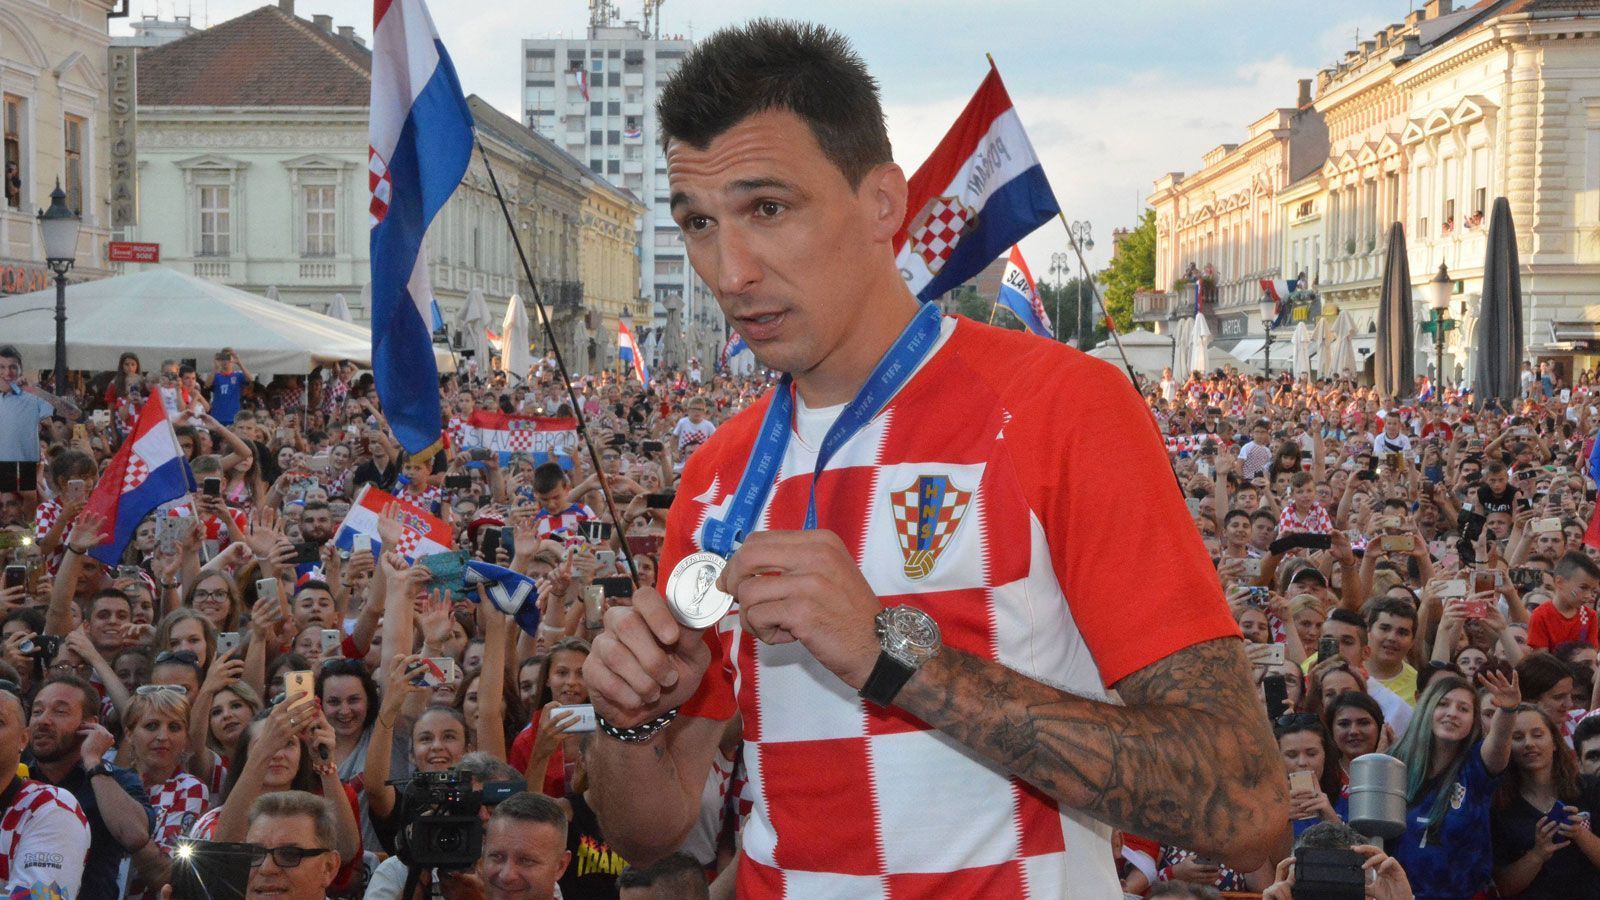 
                <strong>Mario Mandzukic (Kroatien)</strong><br>
                Vize-Weltmeister Mario Mandzukic ist aus der kroatischen Nationalmannschaft zurückgetreten. Der 32-Jährige hat insgesamt 89 Länderspiele bestritten und dabei 33 Tore geschossen. Bei der WM in Russland erreichte er mit Kroatien das Finale und schoss insgesamt drei Tore in sechs Turnierspielen. Das Finale ging mit 4:2 gegen Frankreich verloren. Der Juve-Stürmer verkündete seinen Rücktritt auf der Homepage des kroatischen Verbandes mit einem offenen Brief an die Fans. 
              